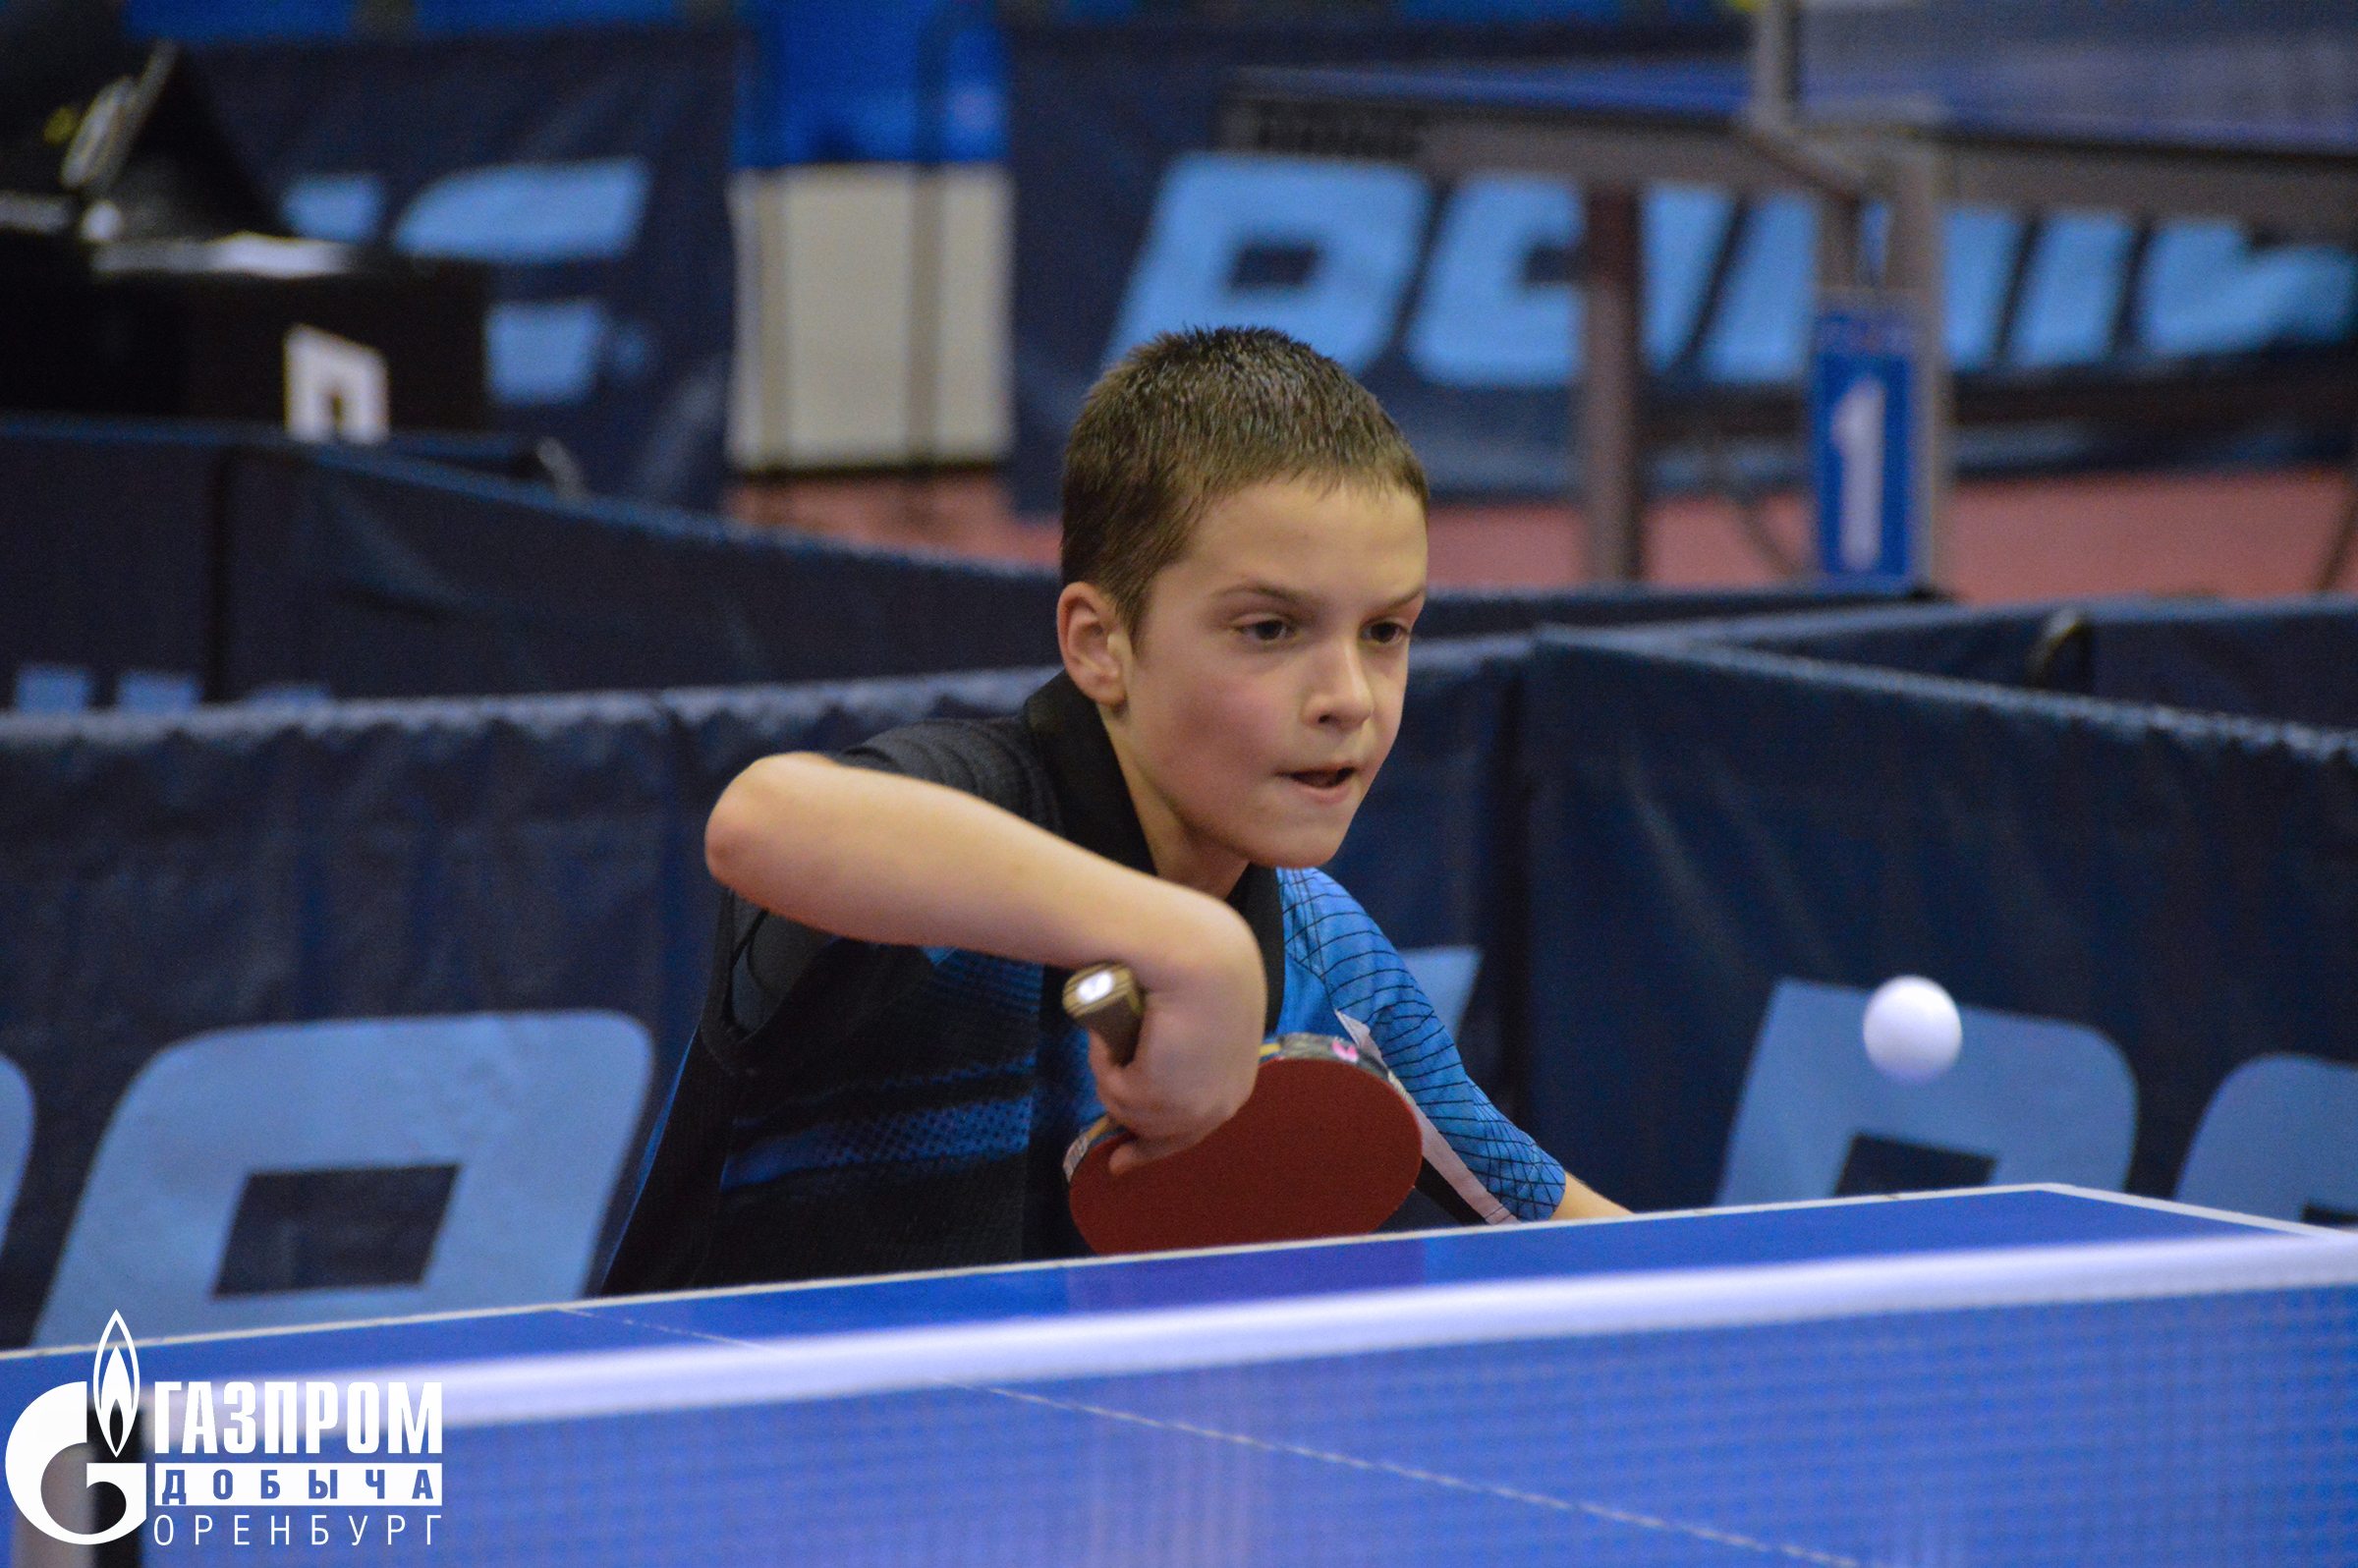 Оренбург вновь примет турнир по настольному теннису среди сильнейших юных спортсменов страны